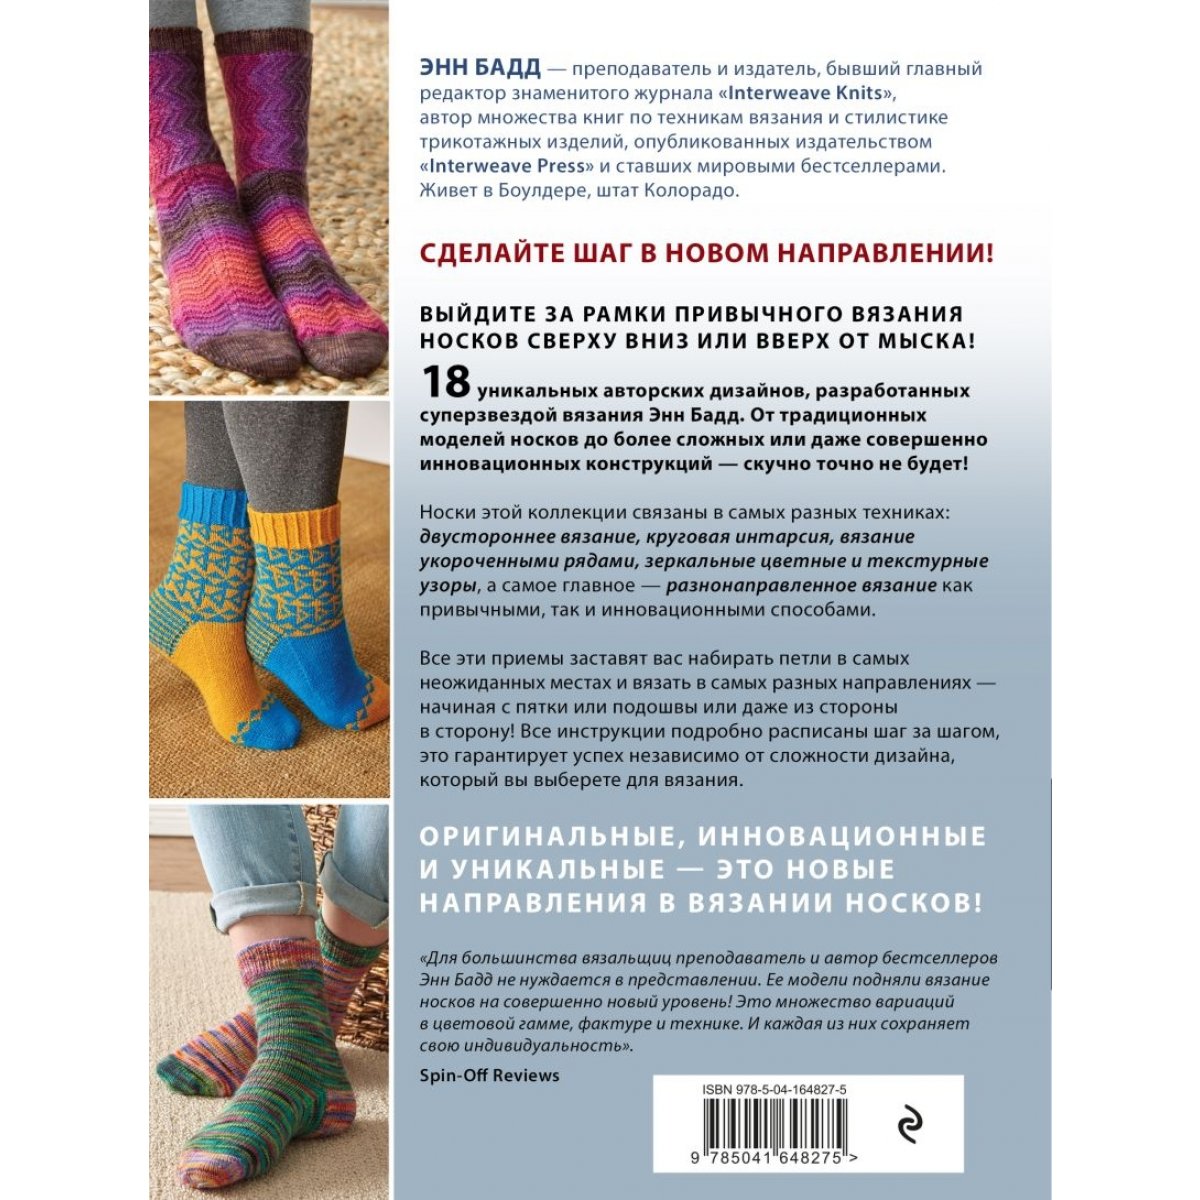 Схемы для вязания носков спицами: авторские модели и бесплатные описания